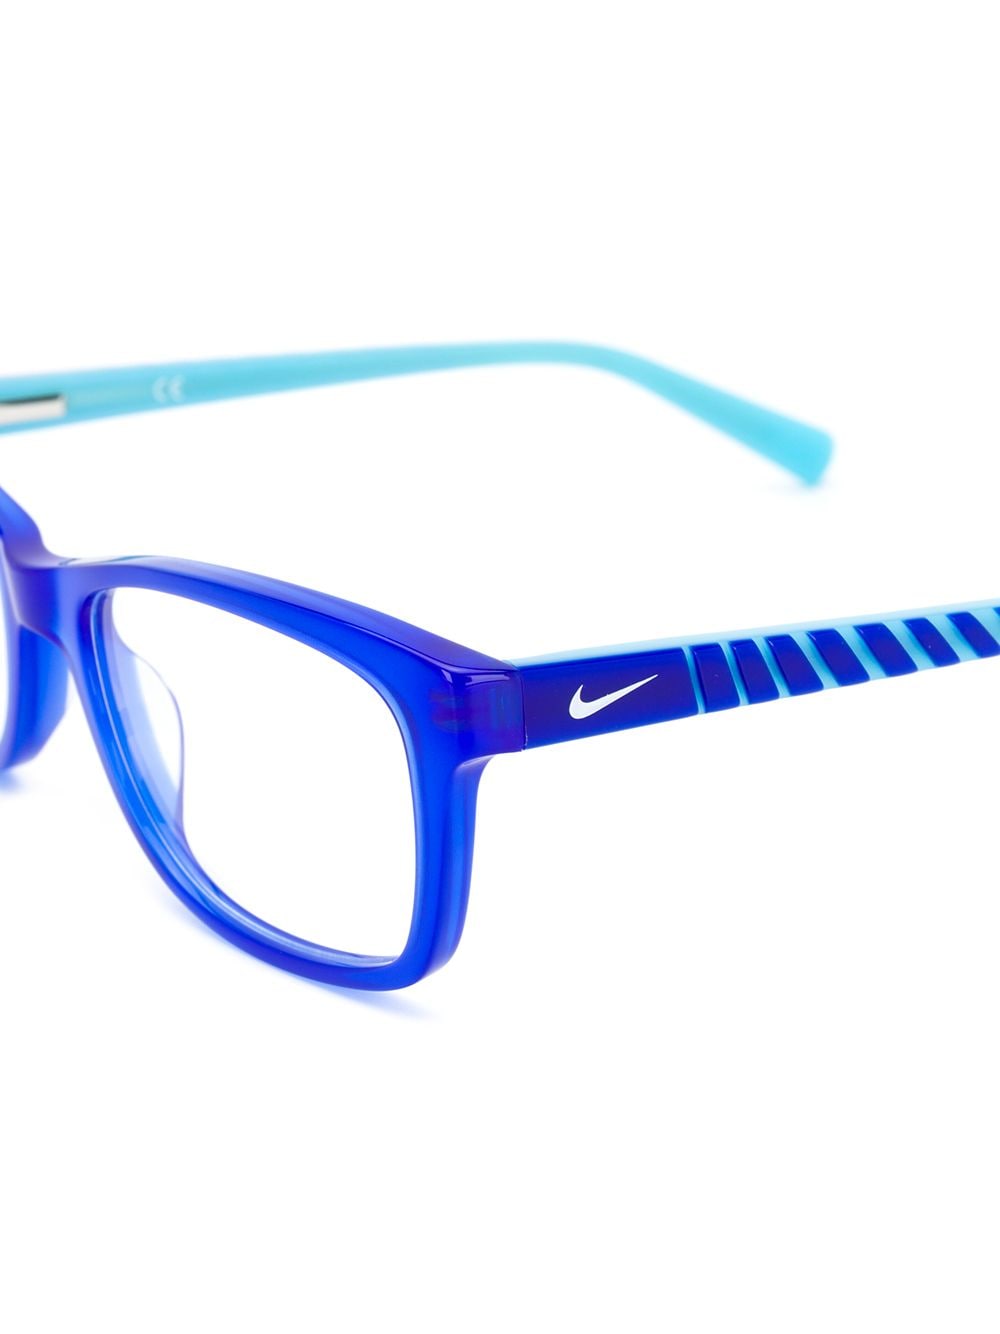 Image 2 of Nike Kids lunettes de vue à monture carrée